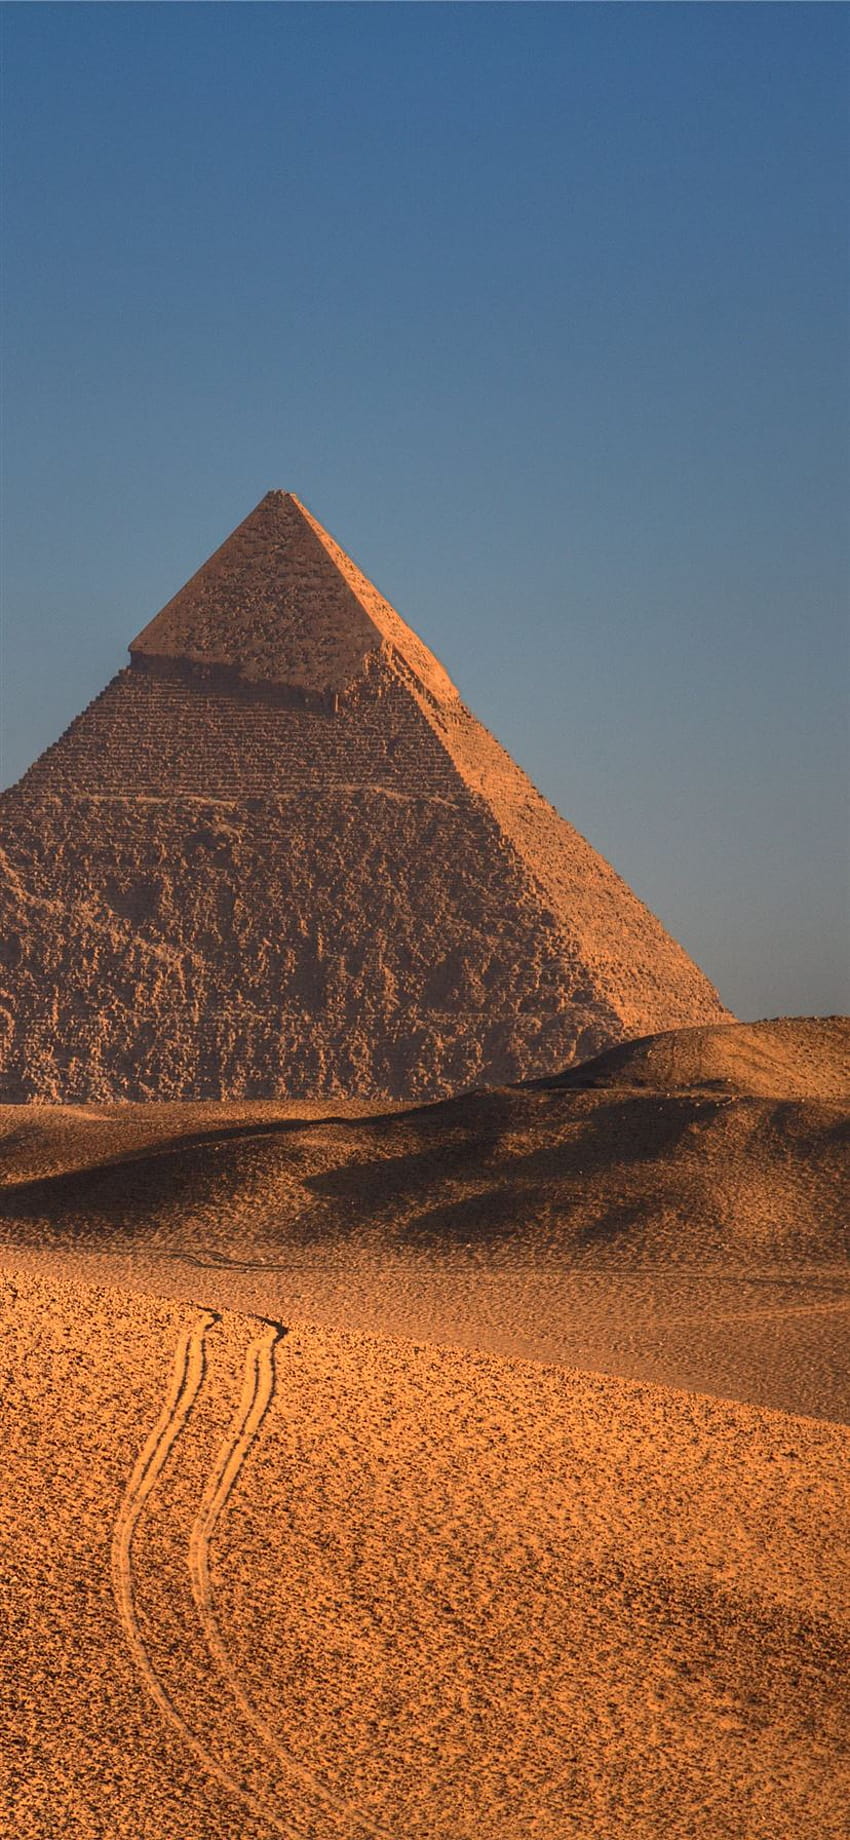 Mejor Egipto iPhone 11, Egipto pirámide iphone fondo de pantalla del teléfono